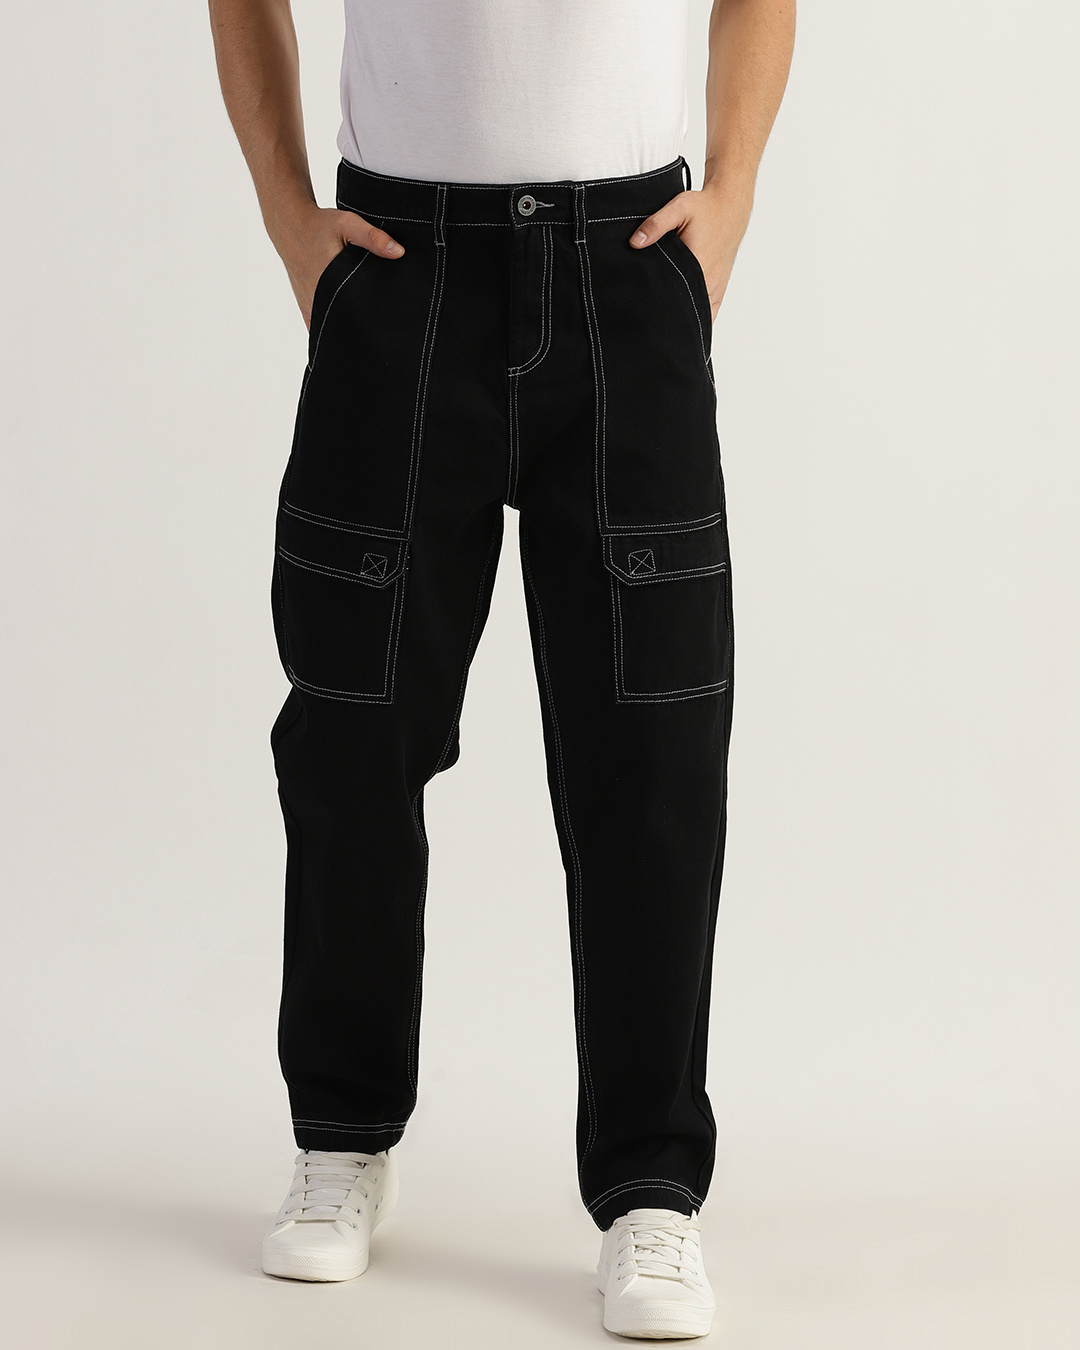 Buy Men's Black Overstiched Cargo Jeans Online at Bewakoof